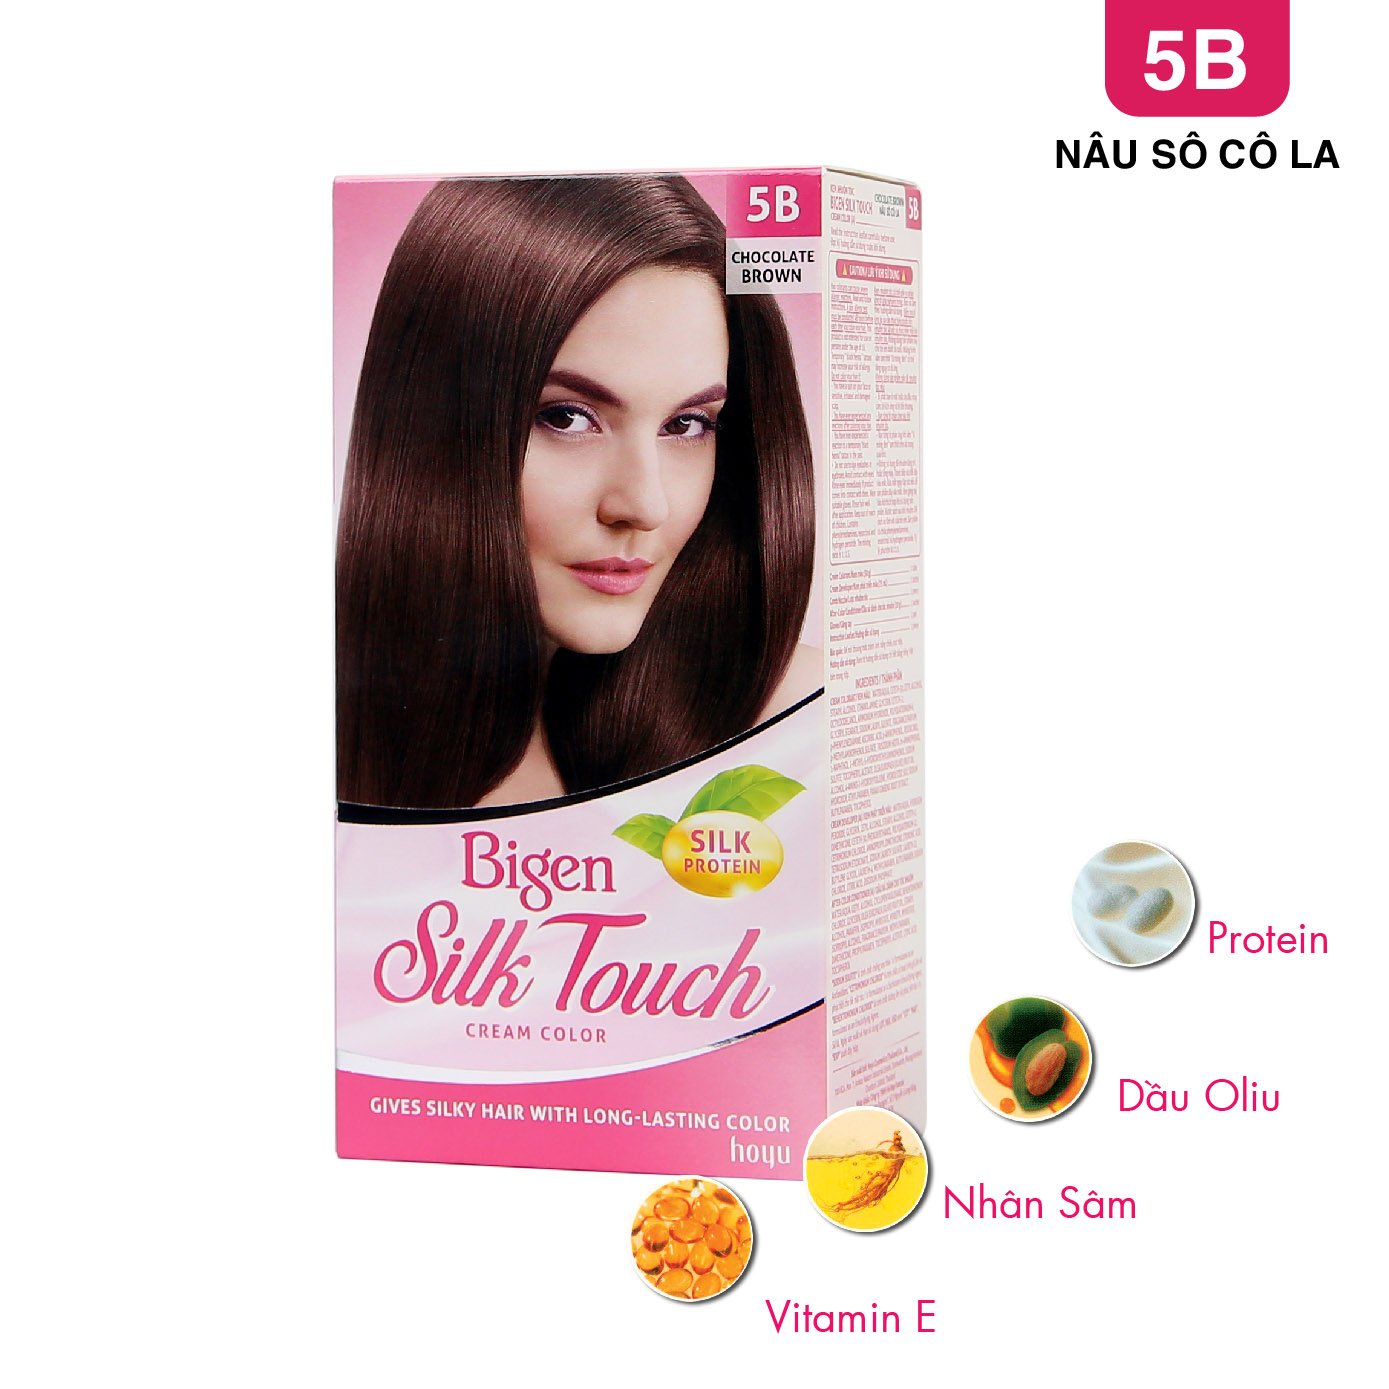 Thách thức bản thân với Kem nhuộm tóc Bigen Silk Touch #5b nâu sôcôla. Sản phẩm sẽ giúp bạn biến đổi mái tóc của mình với sự tươi trẻ và phong cách hiện đại. Hãy xem hình ảnh liên quan để đắm mình trong những màu sắc tuyệt đẹp này.